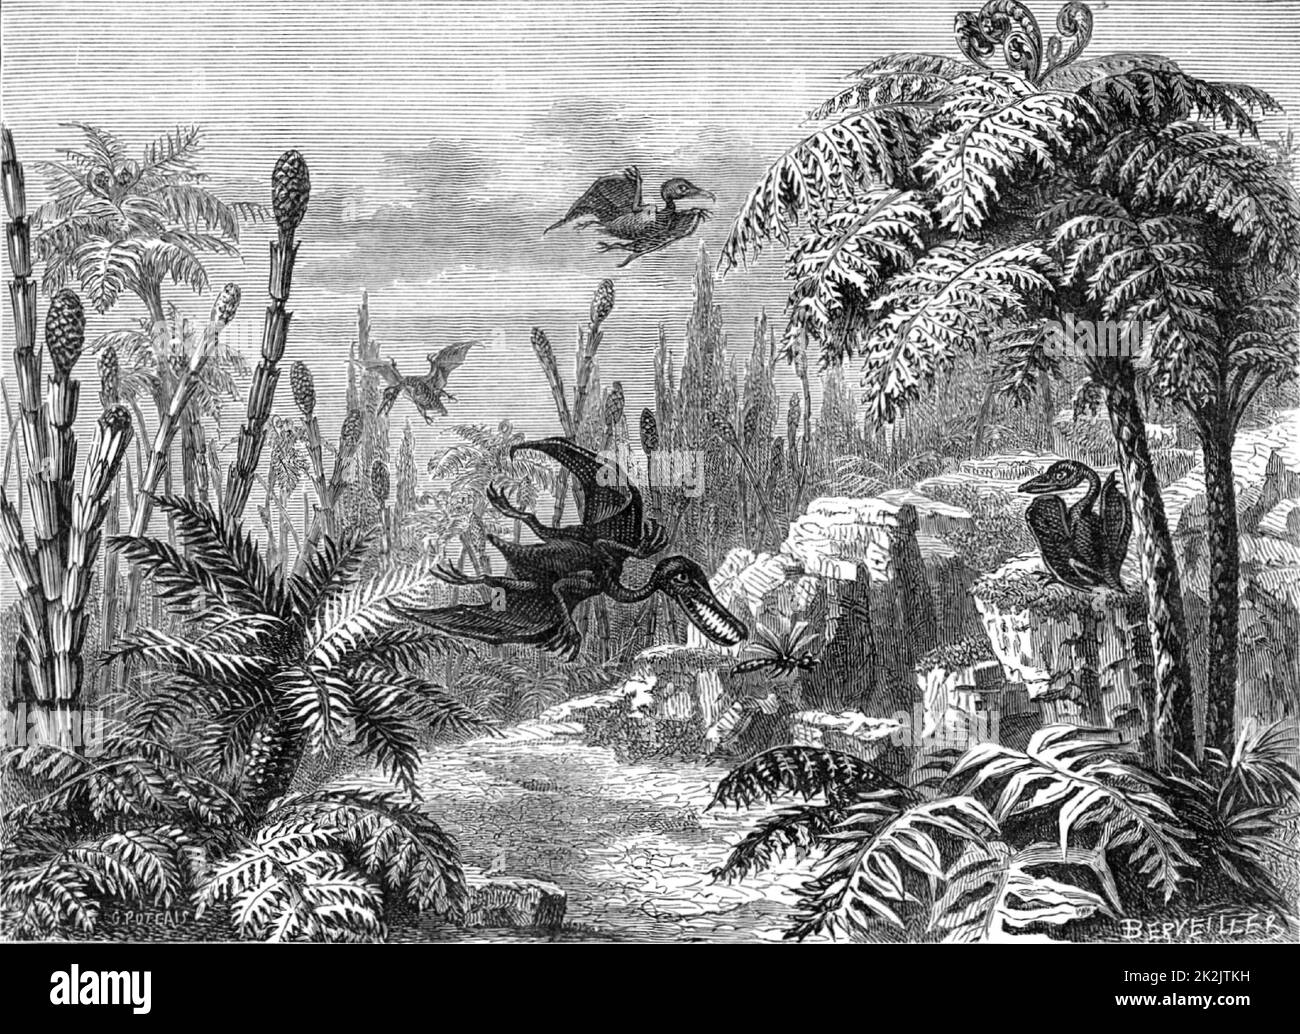 Scène pendant la période Lias, montrant Pterodactyls, une libellule, Equisetums, et Tree Ferns. De 'The Popular Encyclopedia' (Londres, 1888). Gravure. Banque D'Images